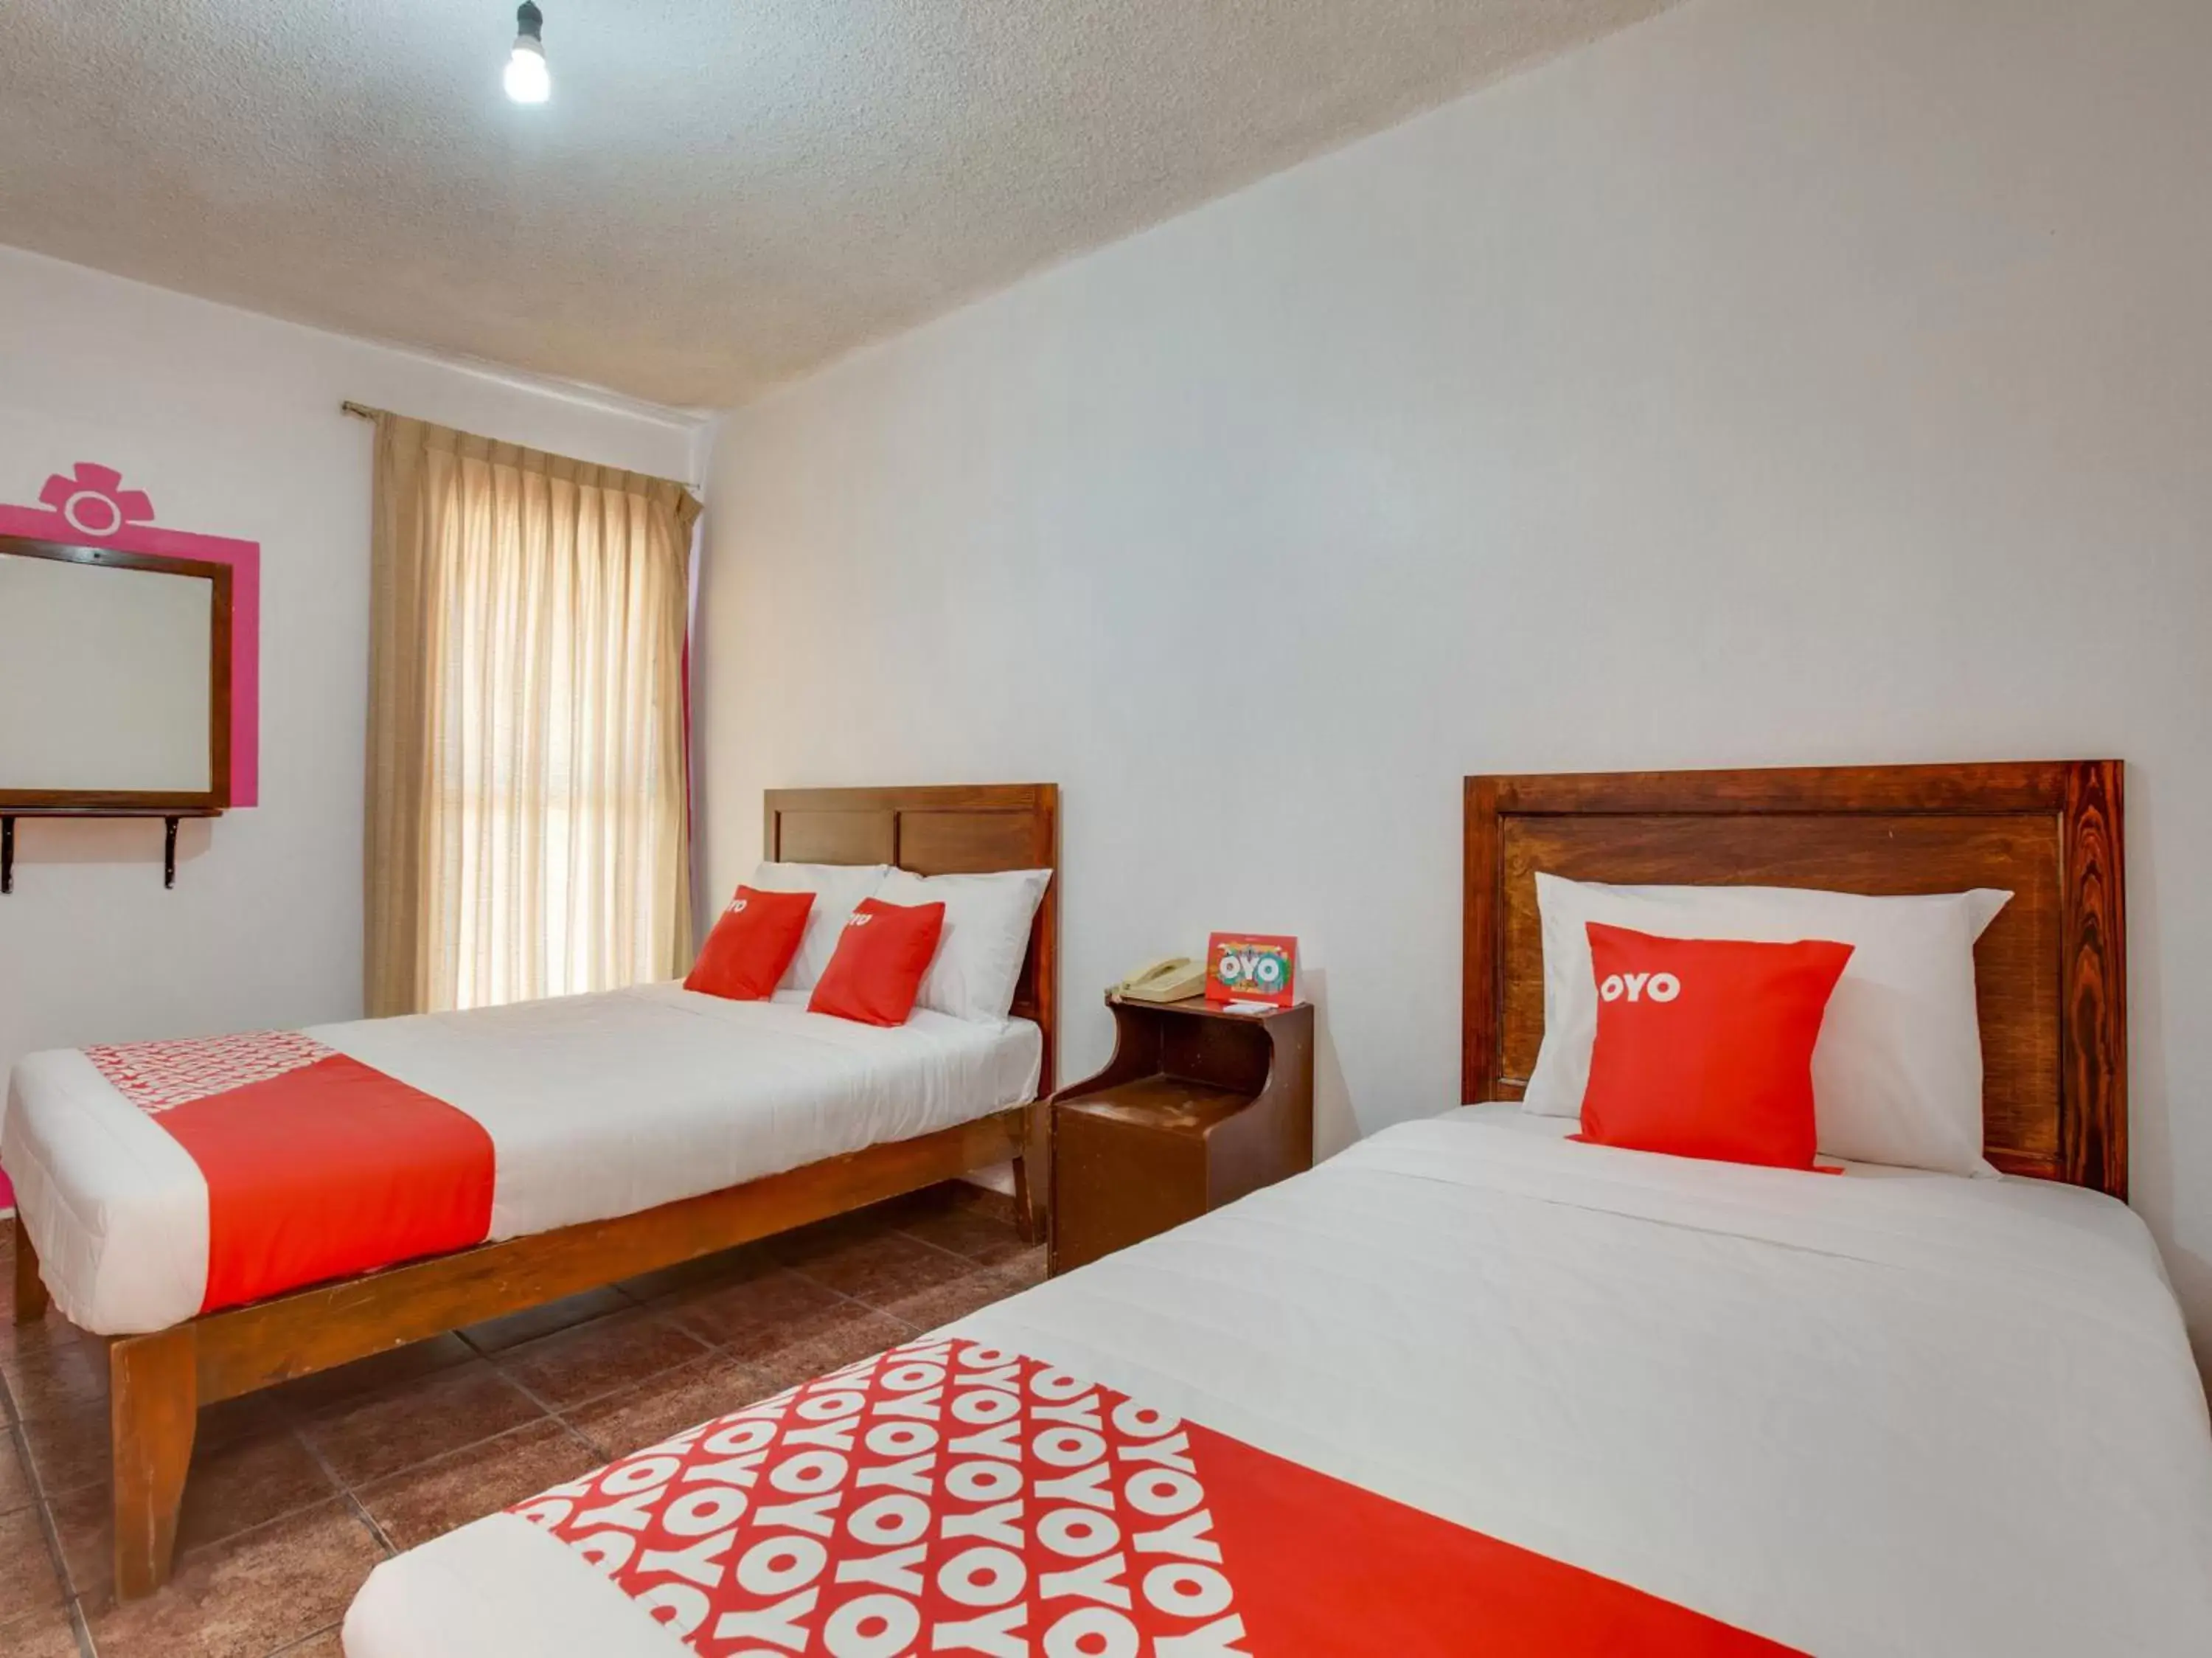 Bedroom, Bed in OYO Hotel Huautla, Oaxaca